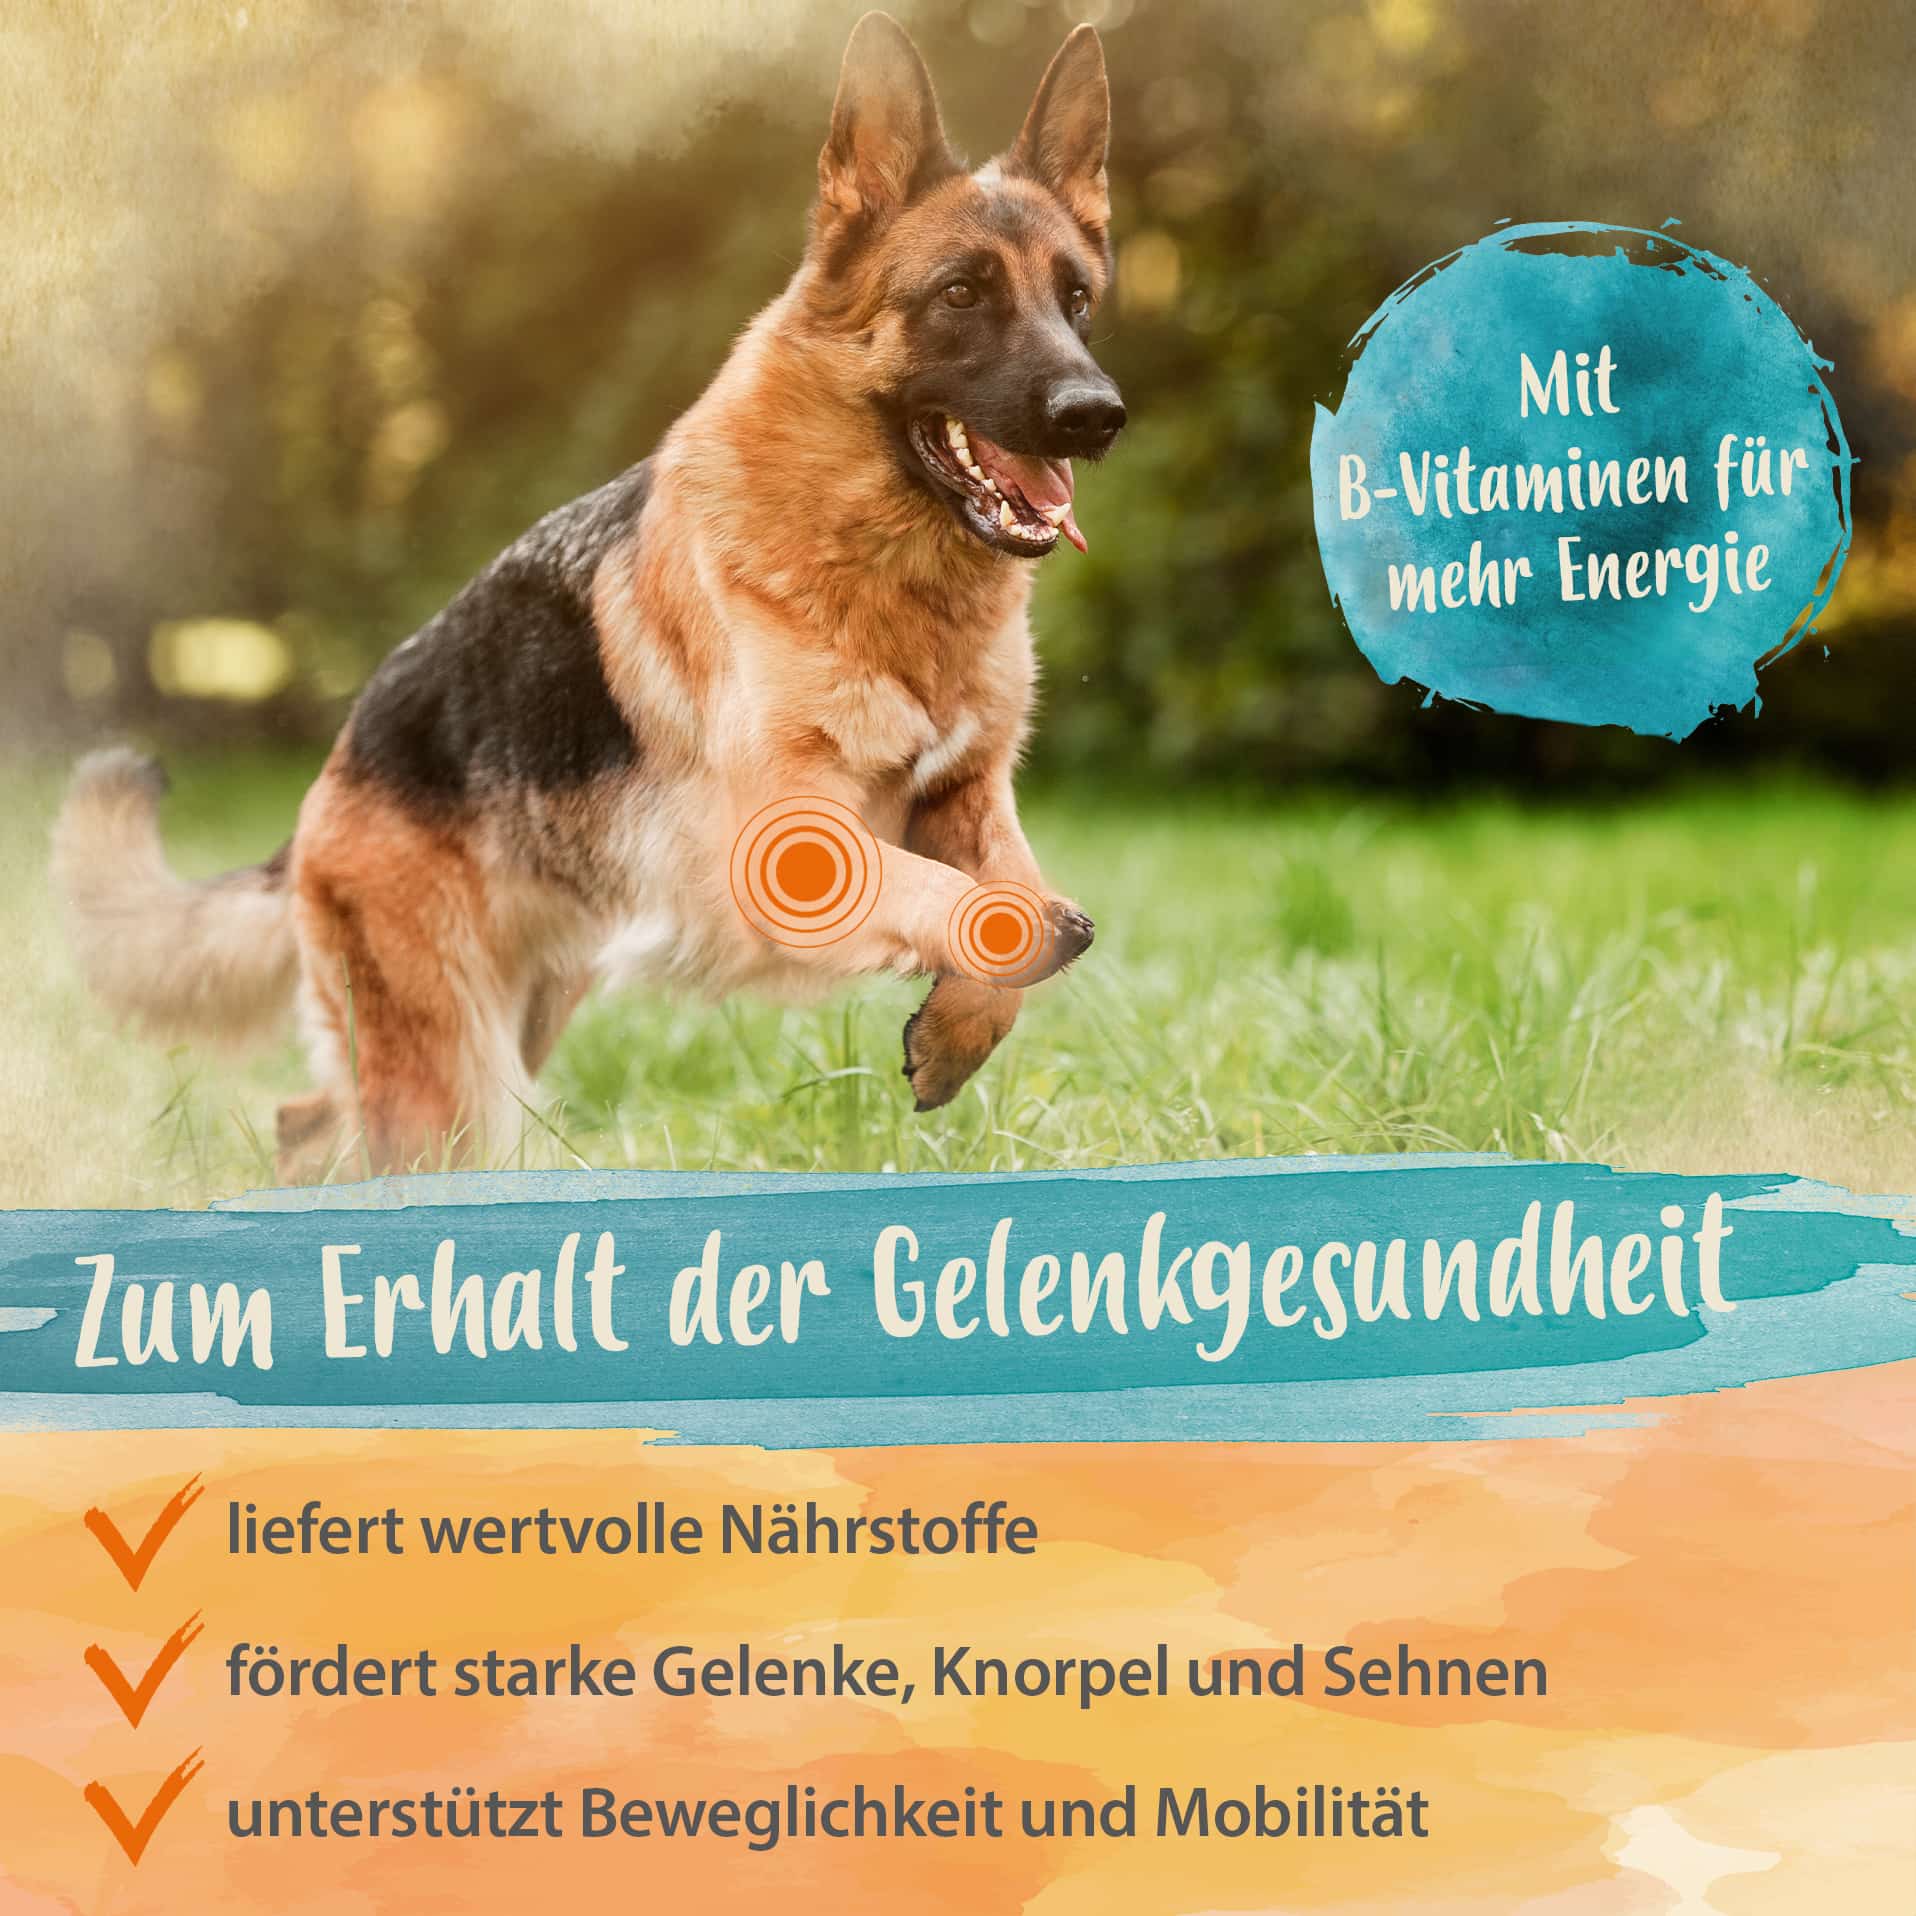 IdaPlus Gelenktabletten für Hunde